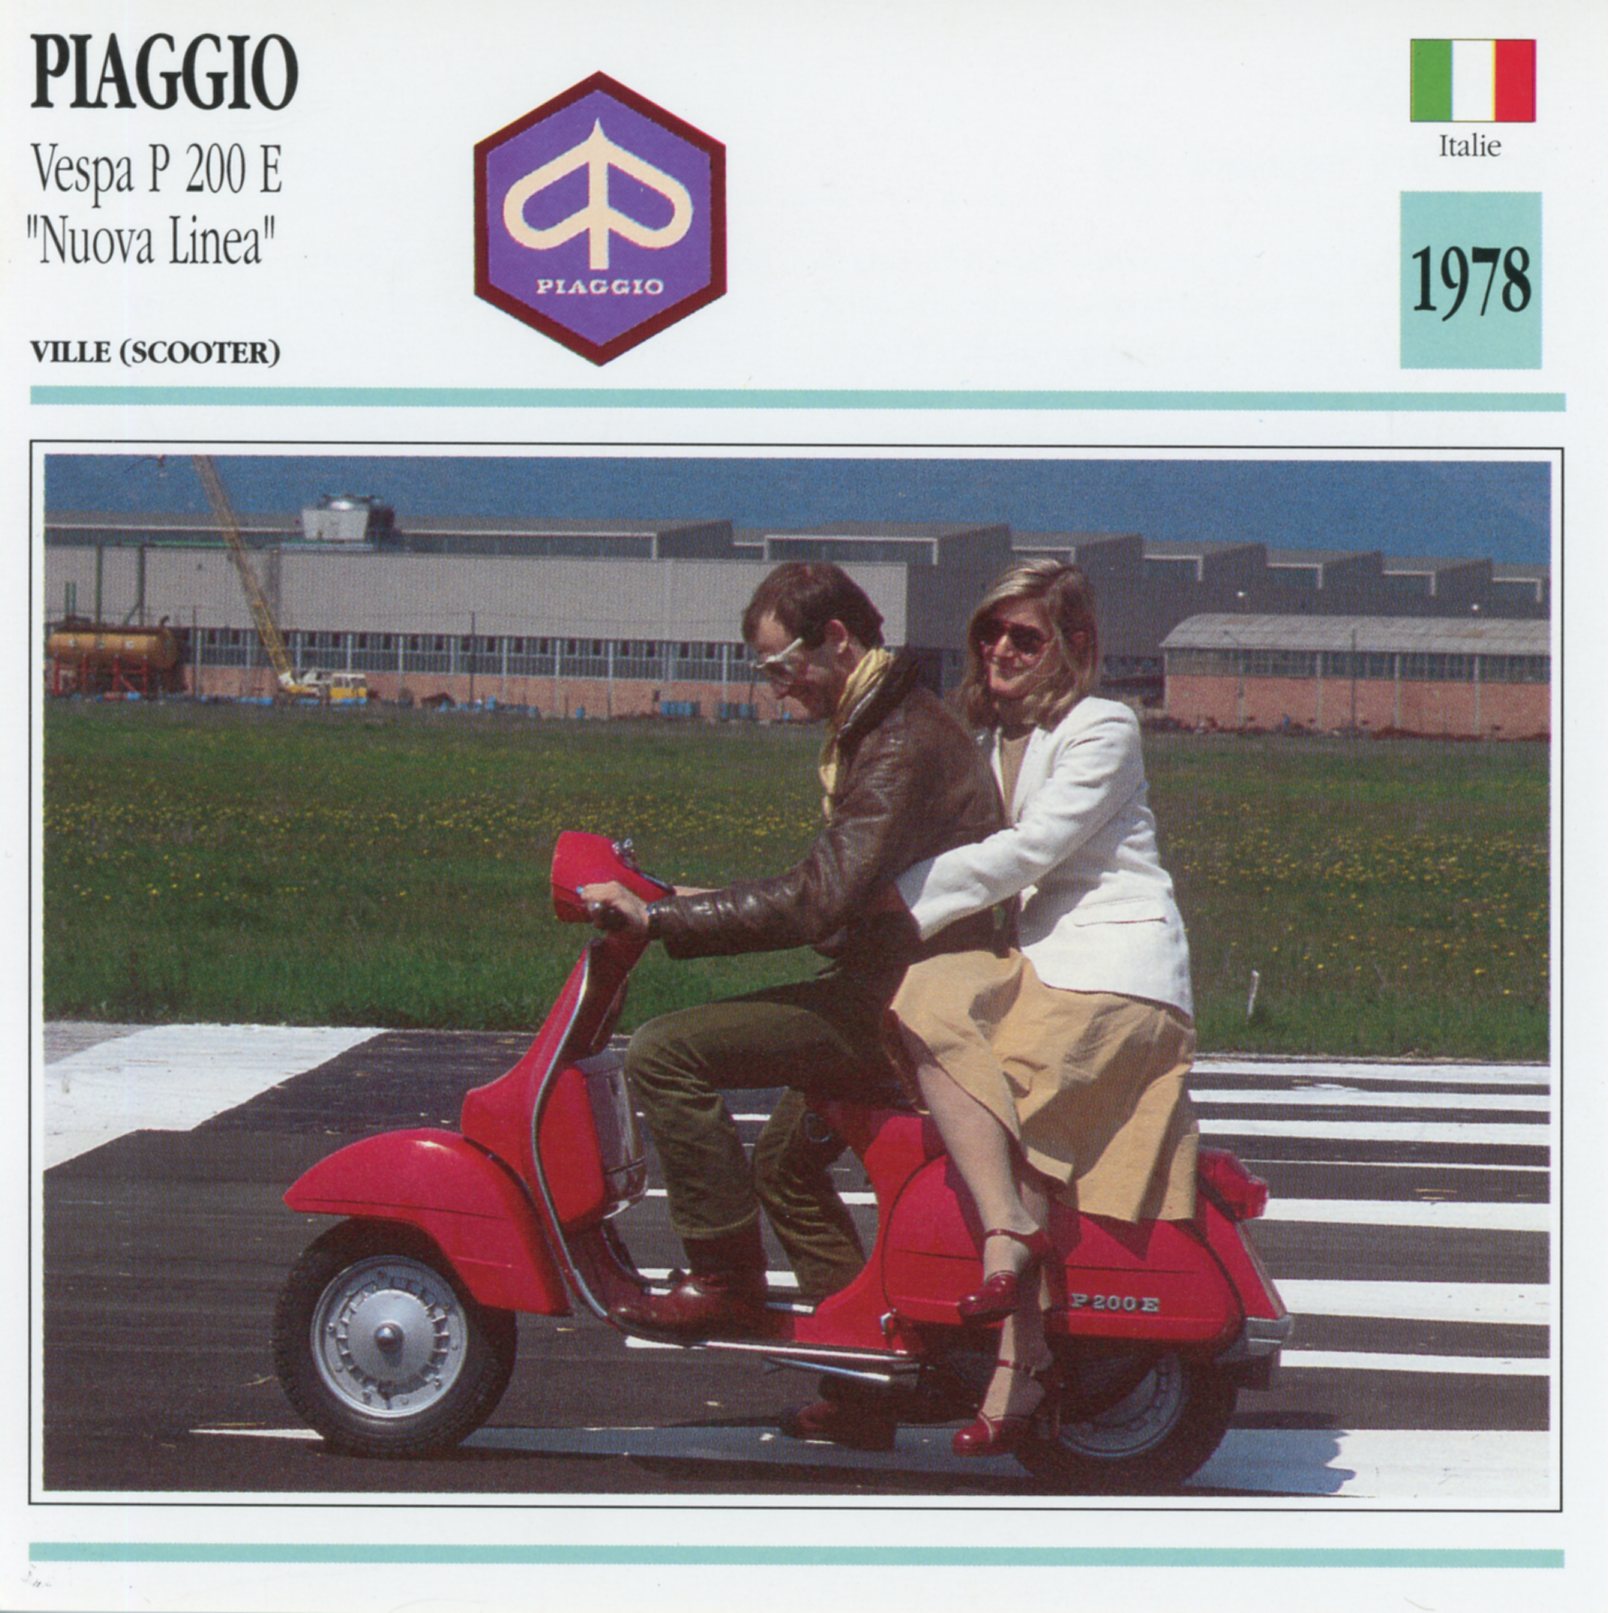 PIAGGIO-P200E-VESPA-P200-LEMASTERBROCKERS-FICHE-SCOOTER-CARD-ATLAS